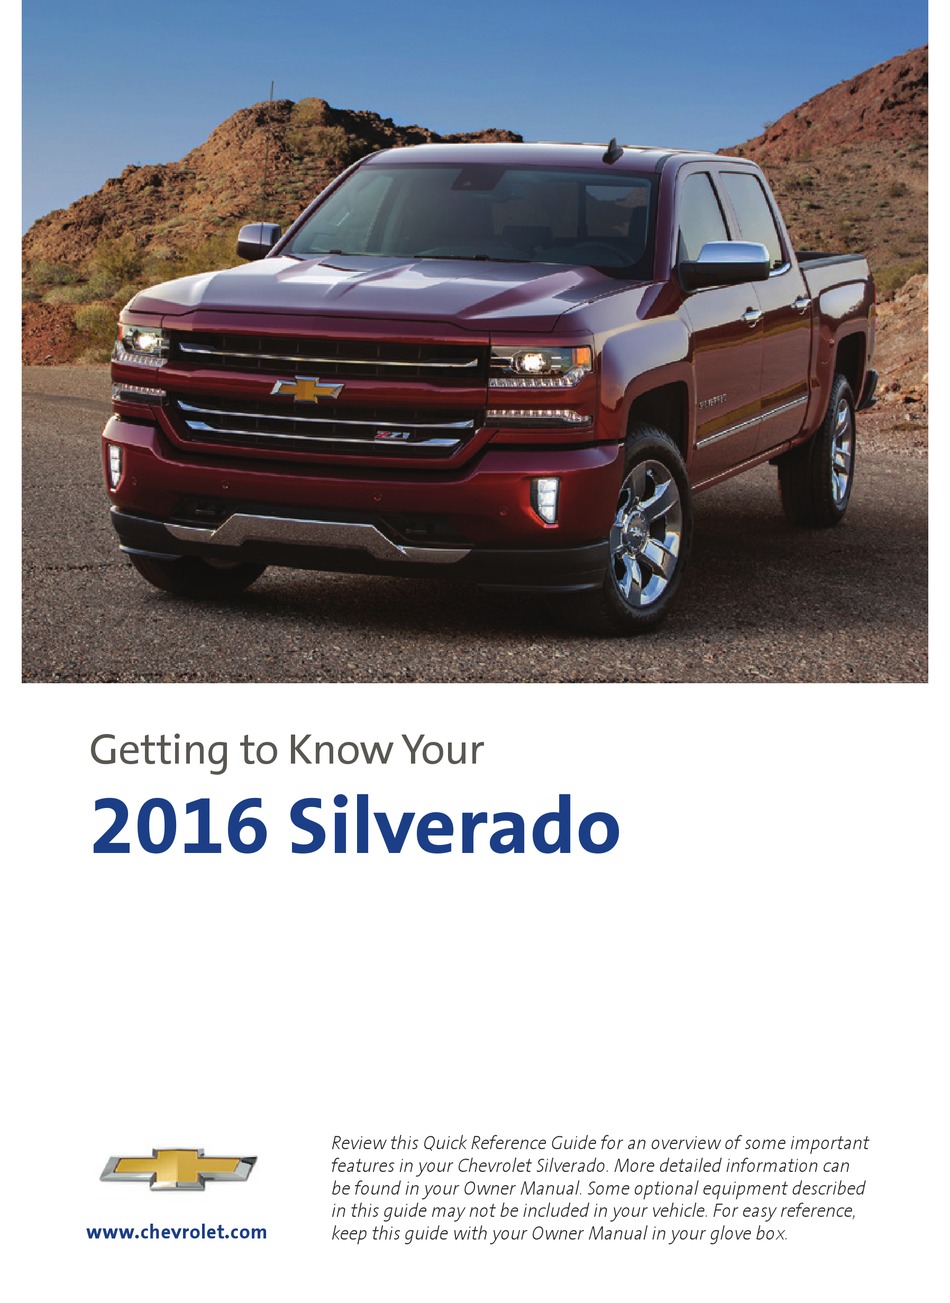 2016 Chevrolet Silverado 1500 Owners Manual 115319 